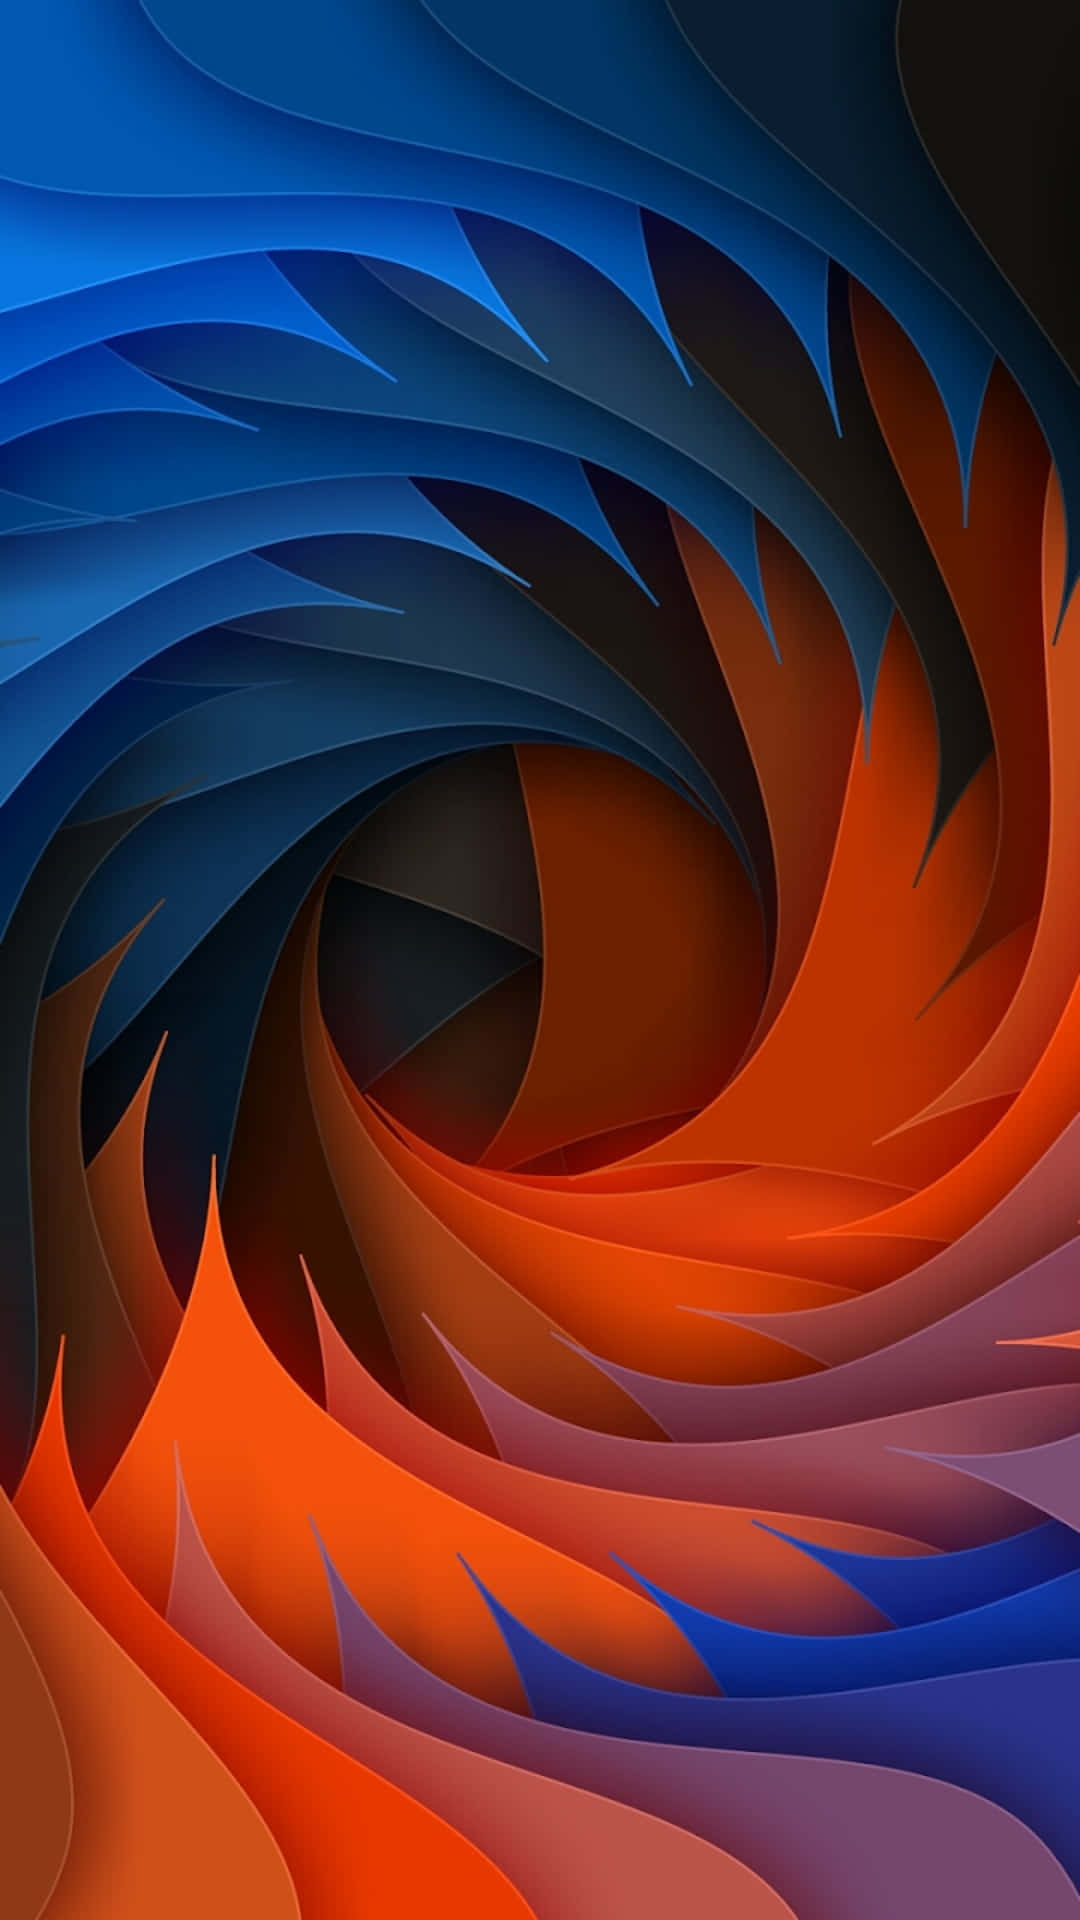 Et swirlende abstrakt design med blå, orange og sorte farver